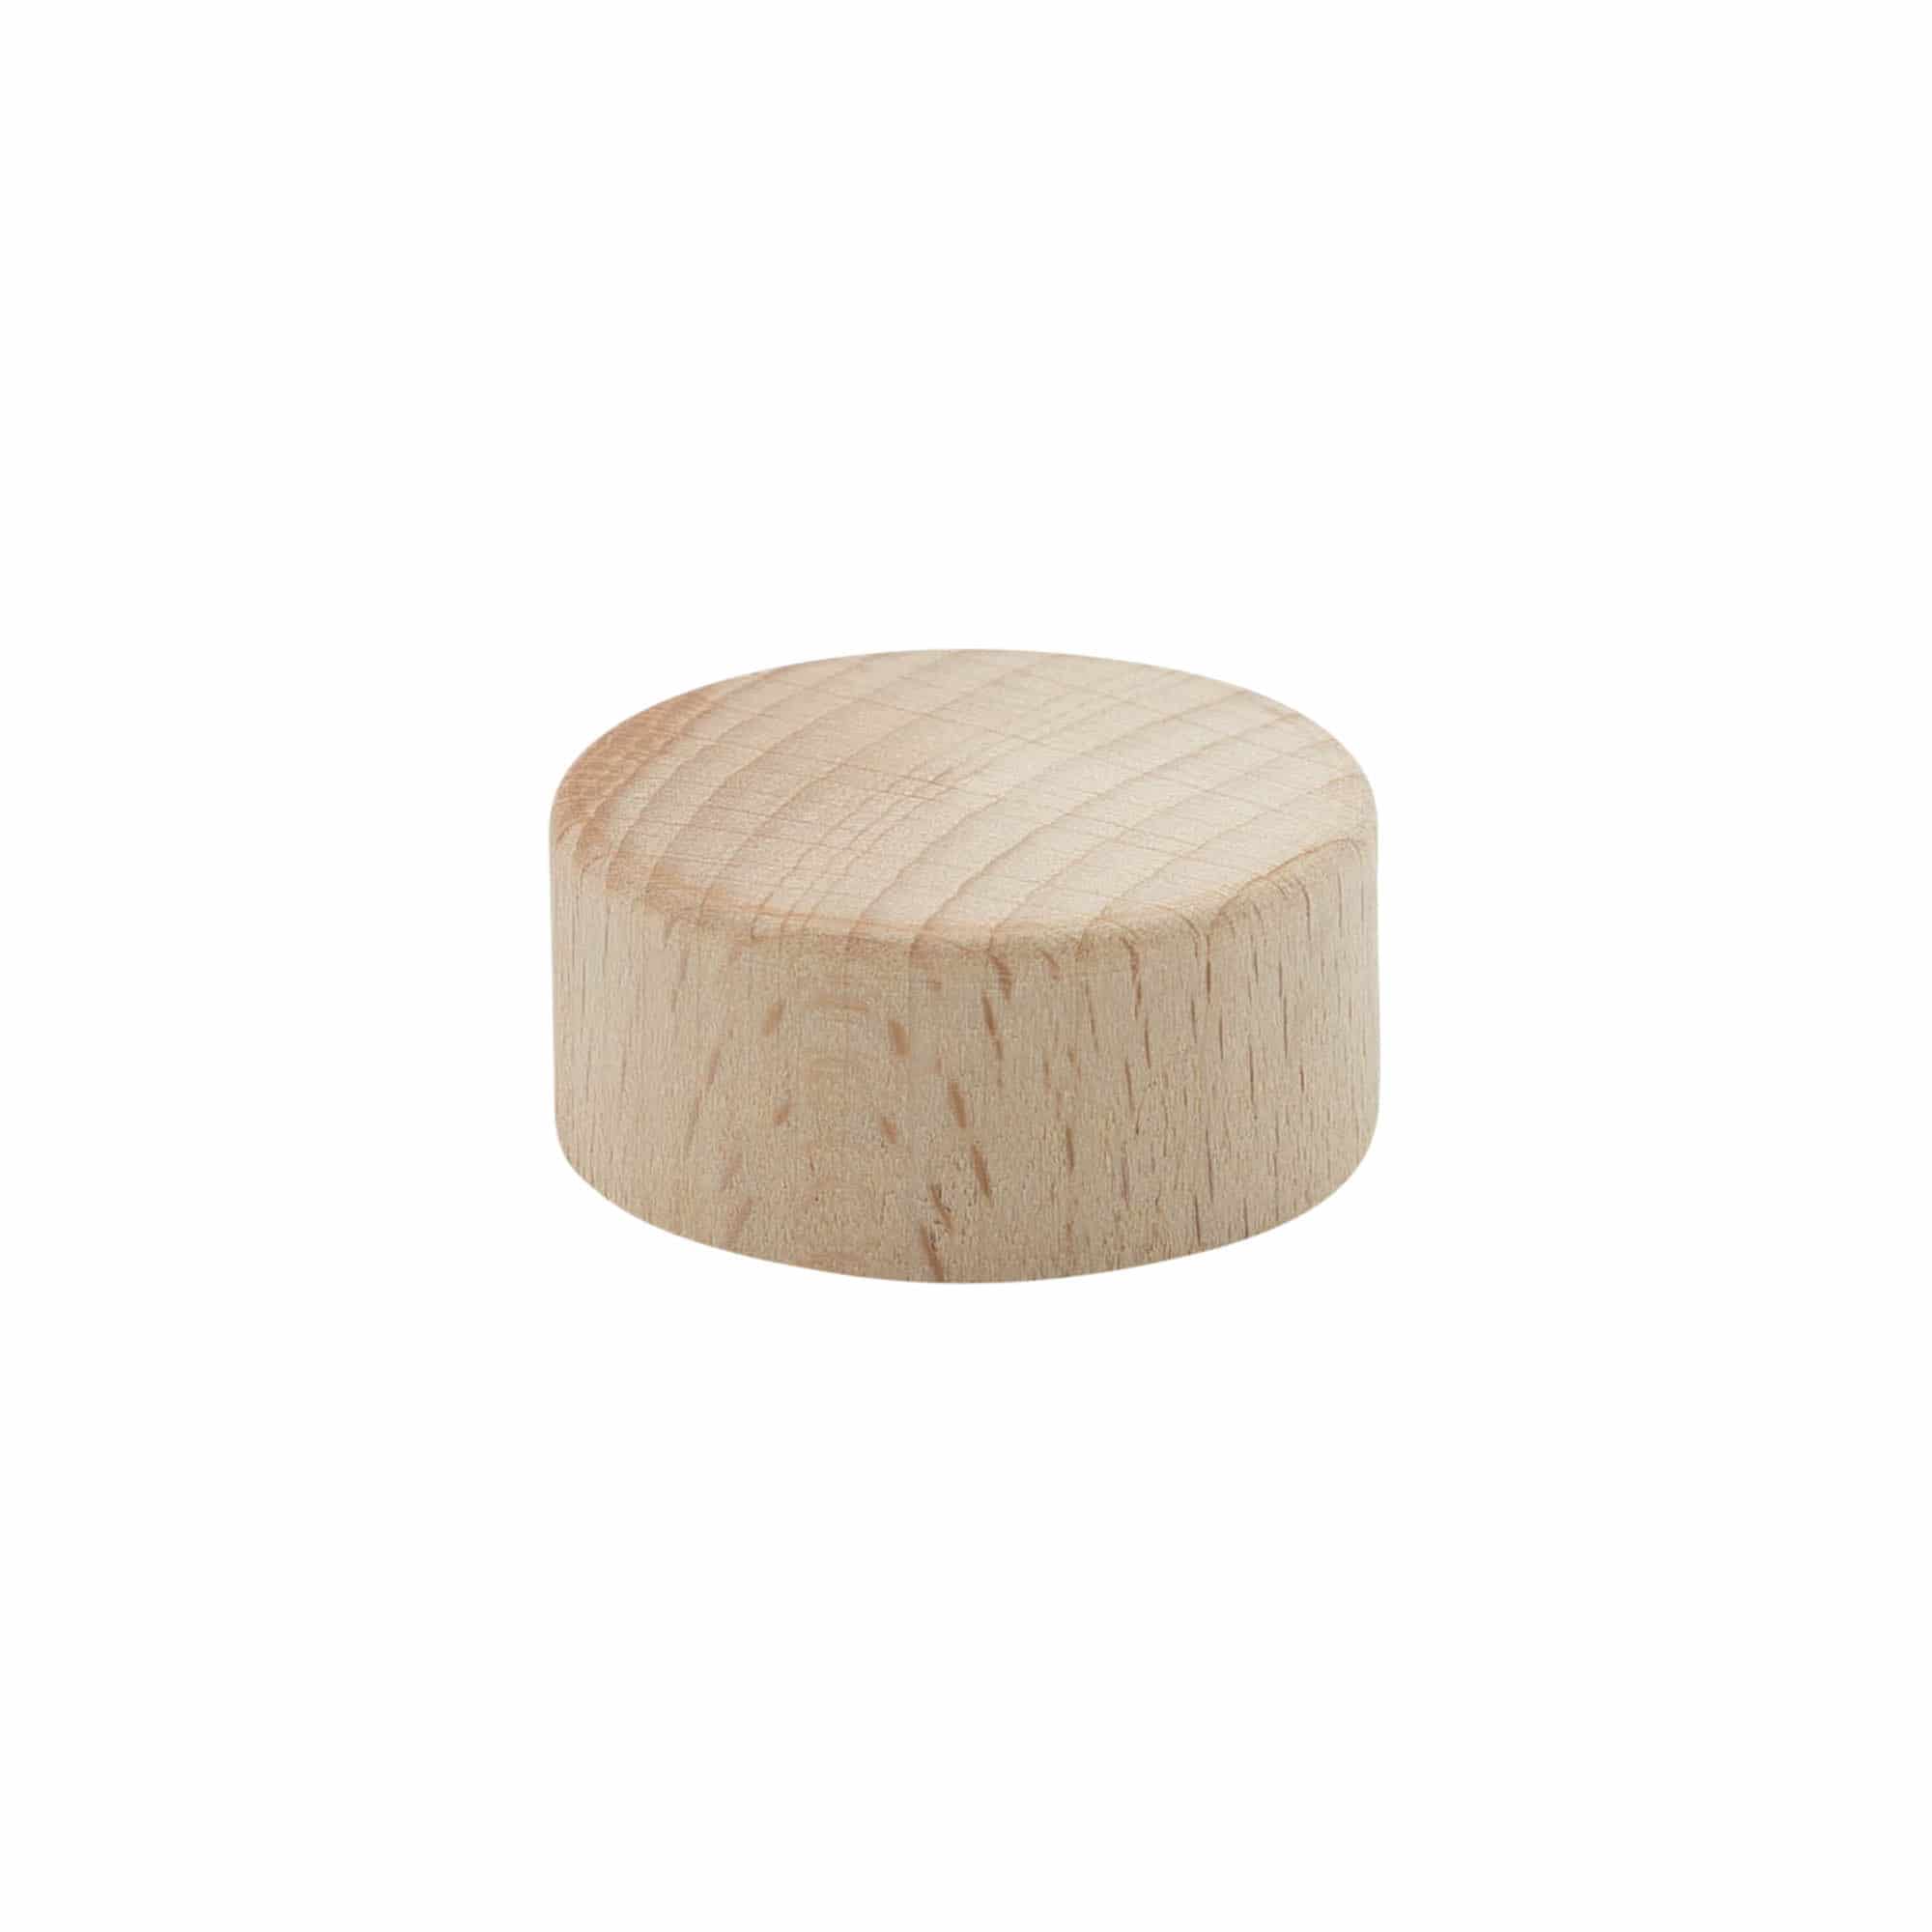 Šroubovací uzávěr, dřevo, béžový, pro ústí: GPI 33/400